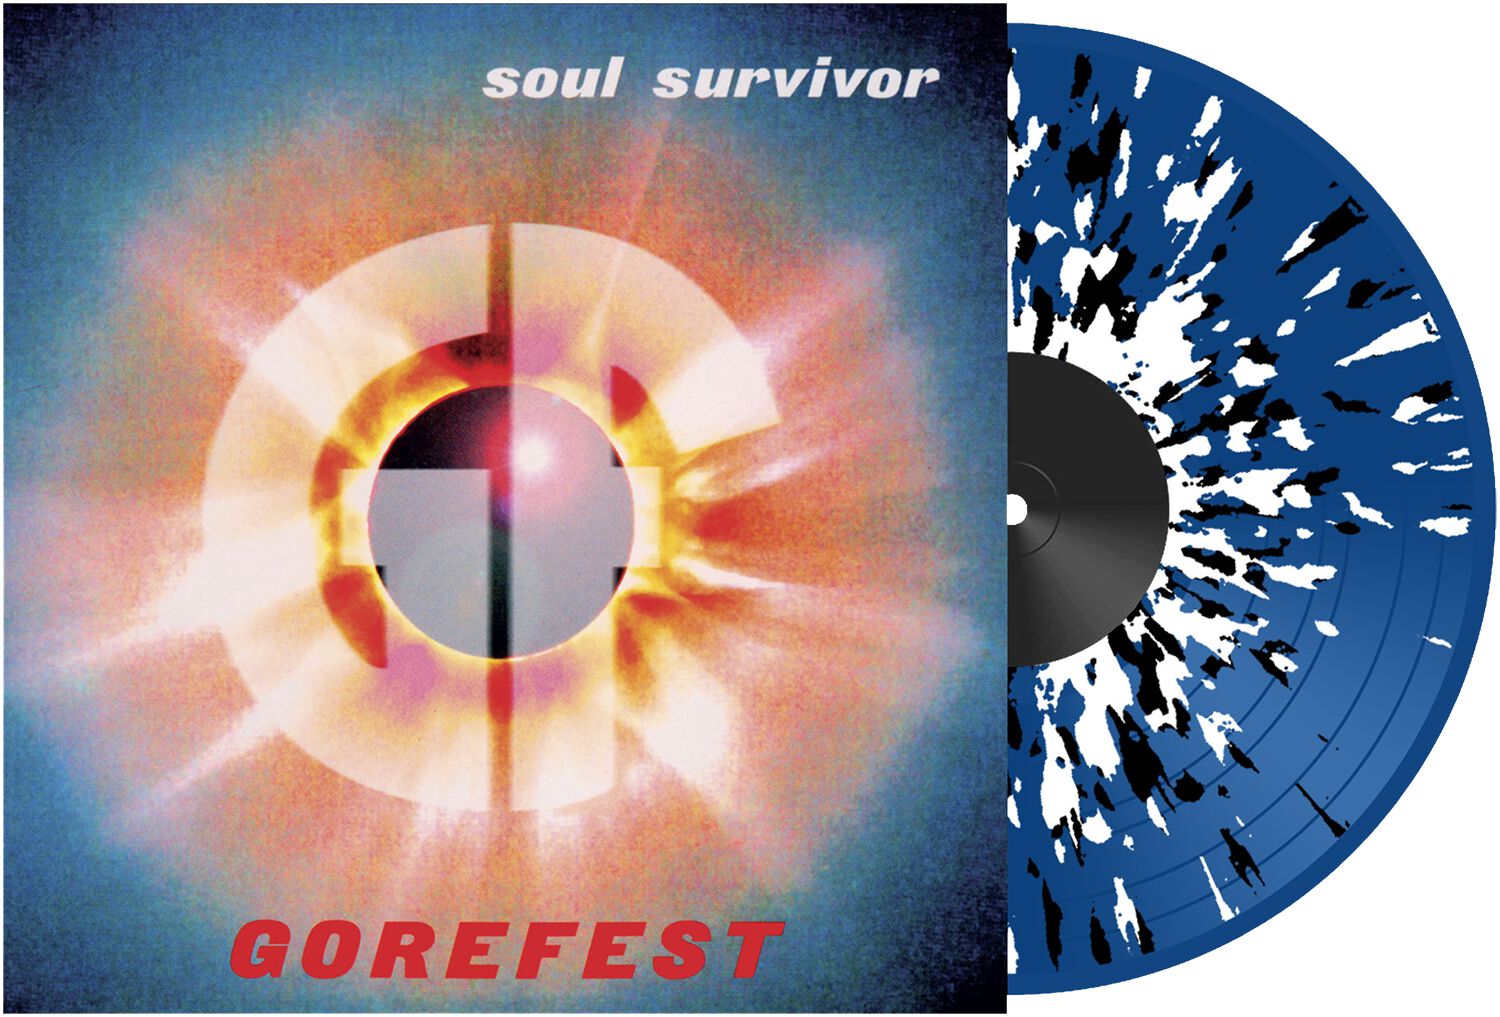 Image of Gorefest Soul survivor LP splattered